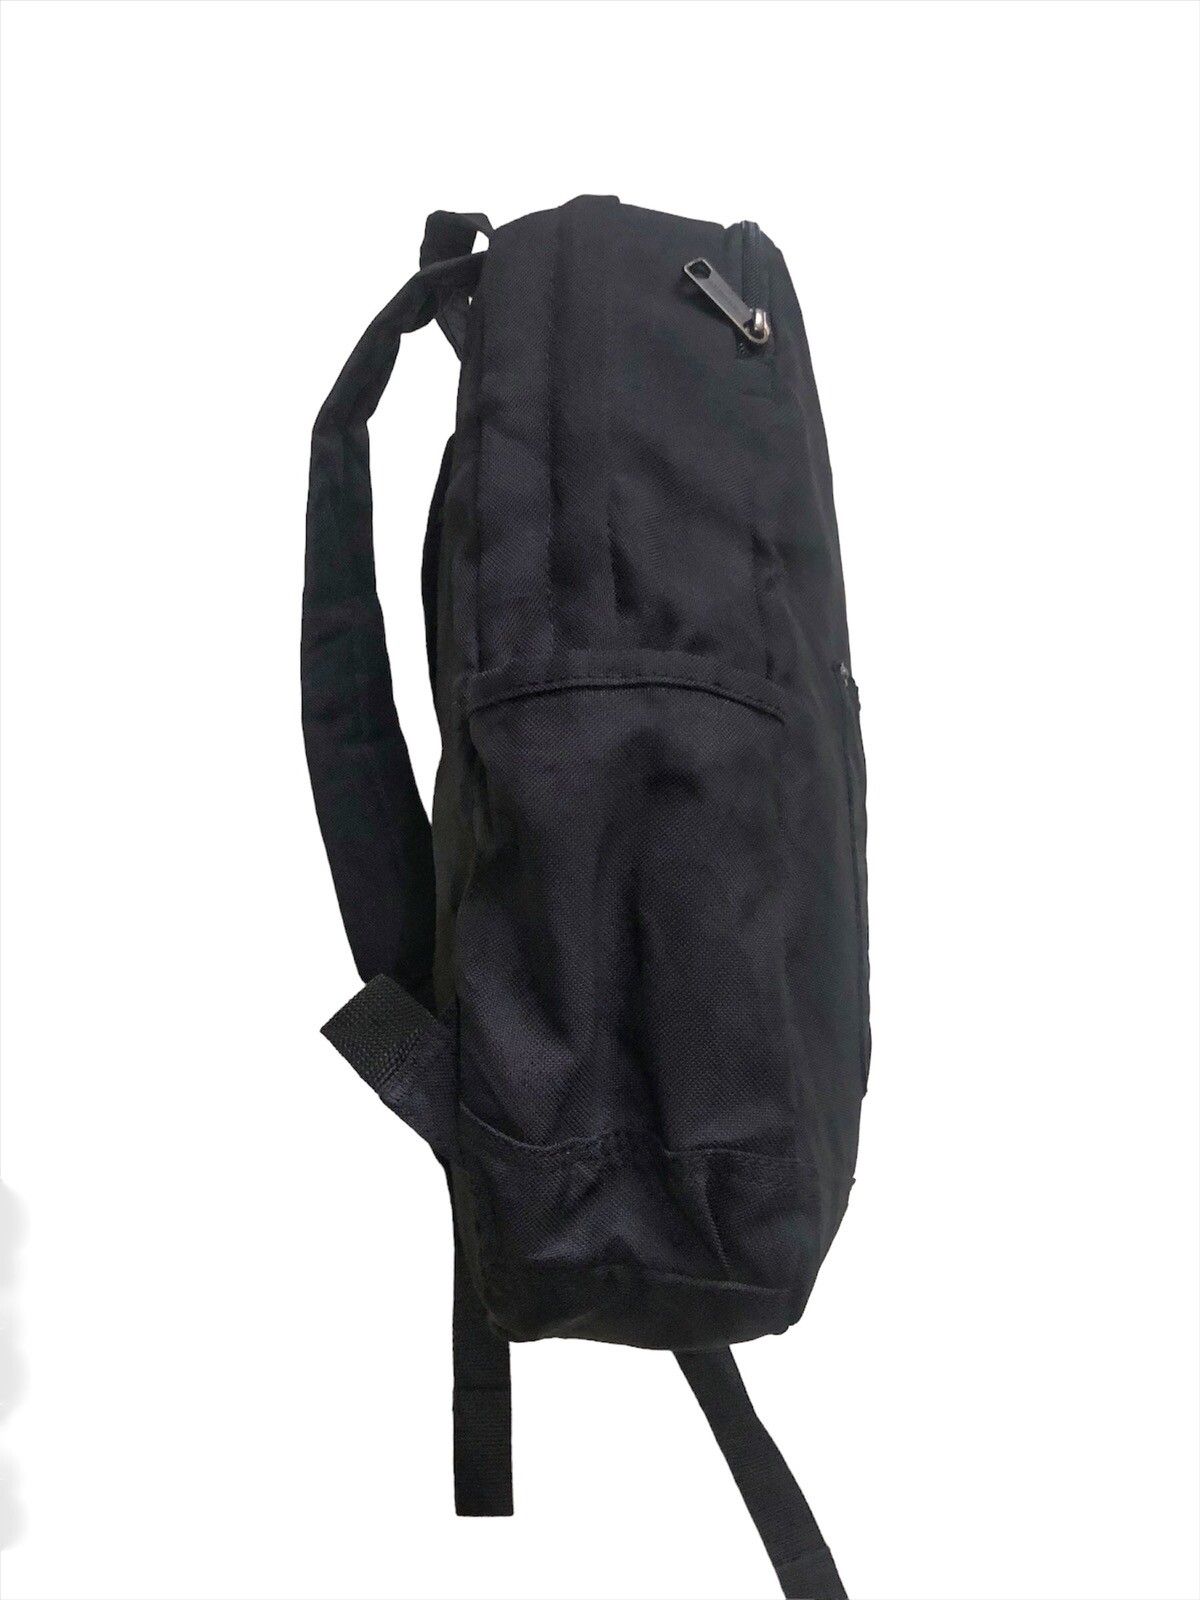 Carhart Wip Backpack - 3